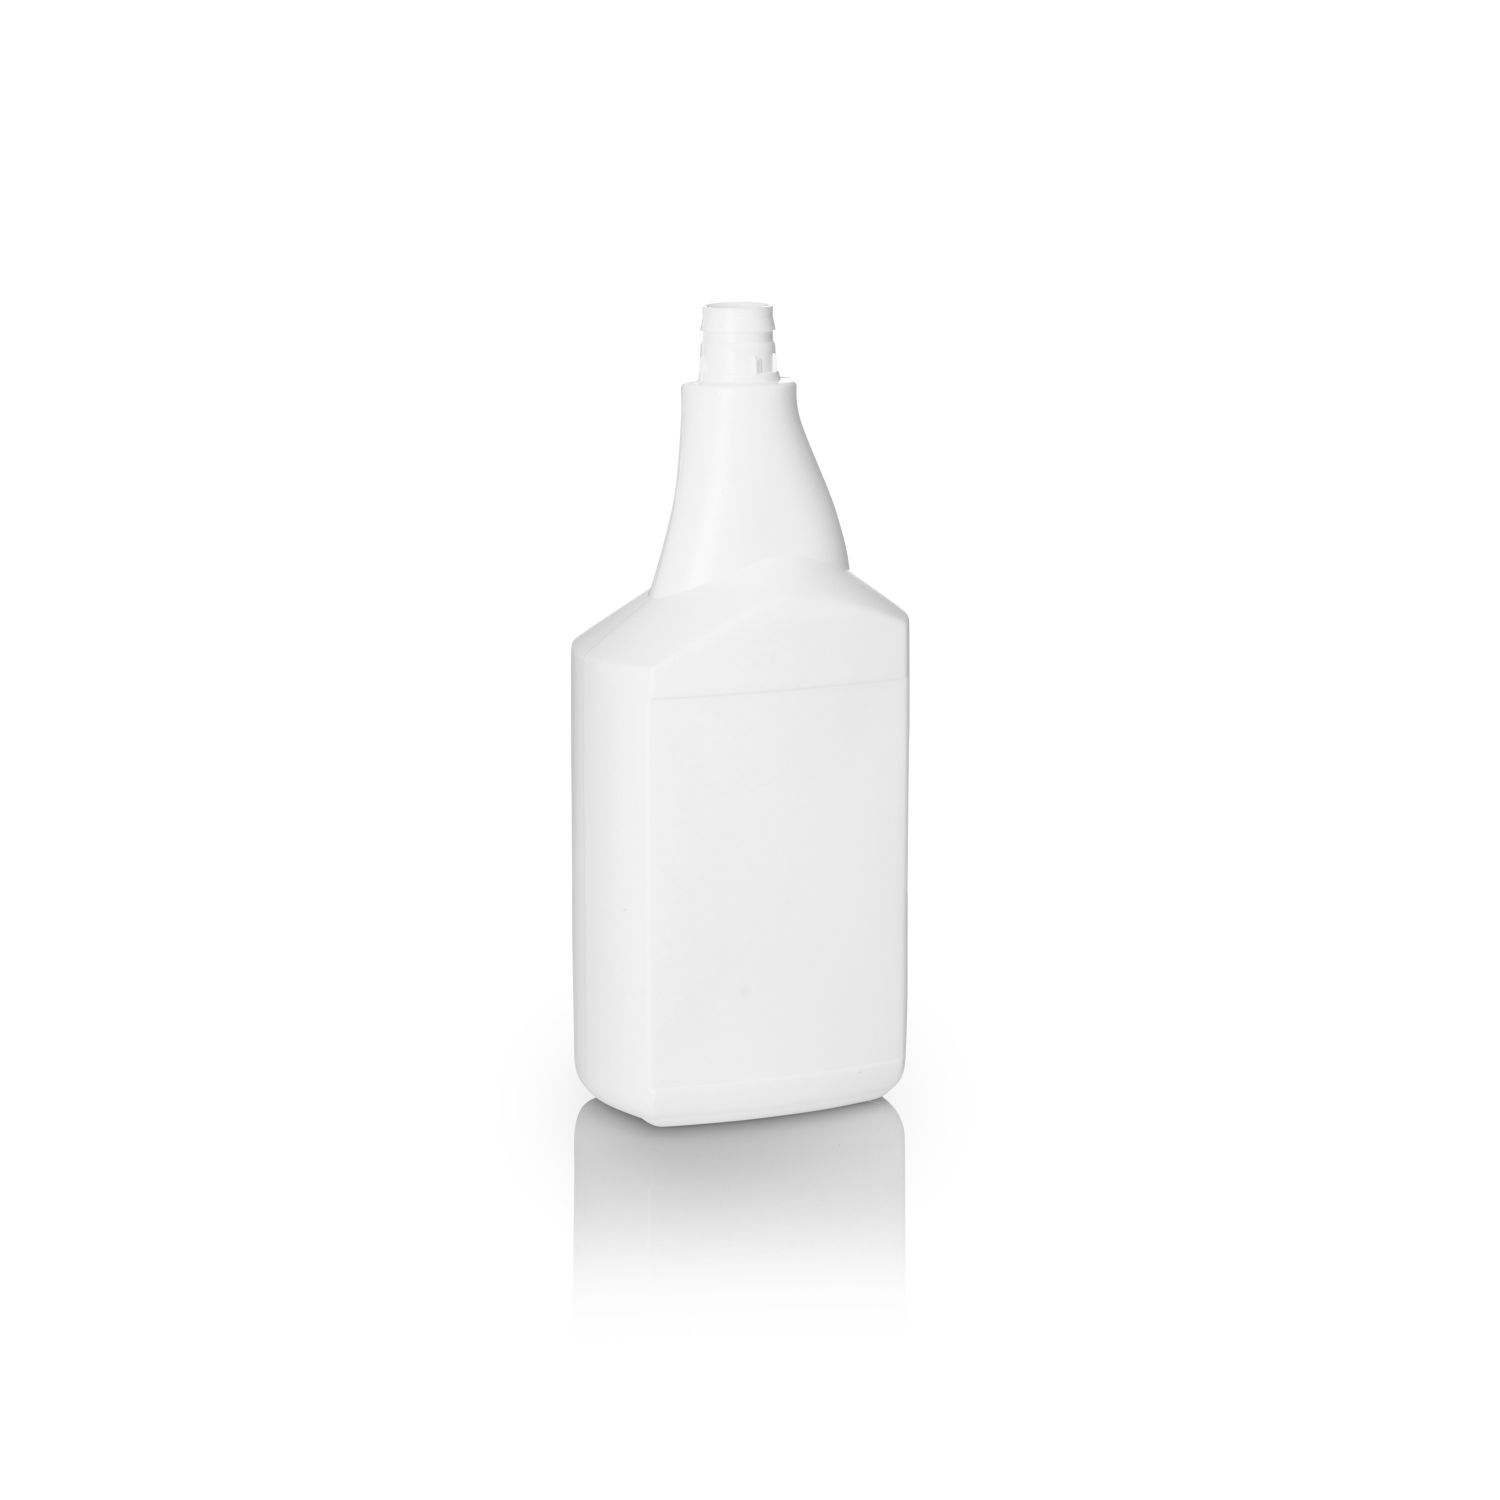 1Ltr White HDPE Rectangular Snap on Spray Bottle